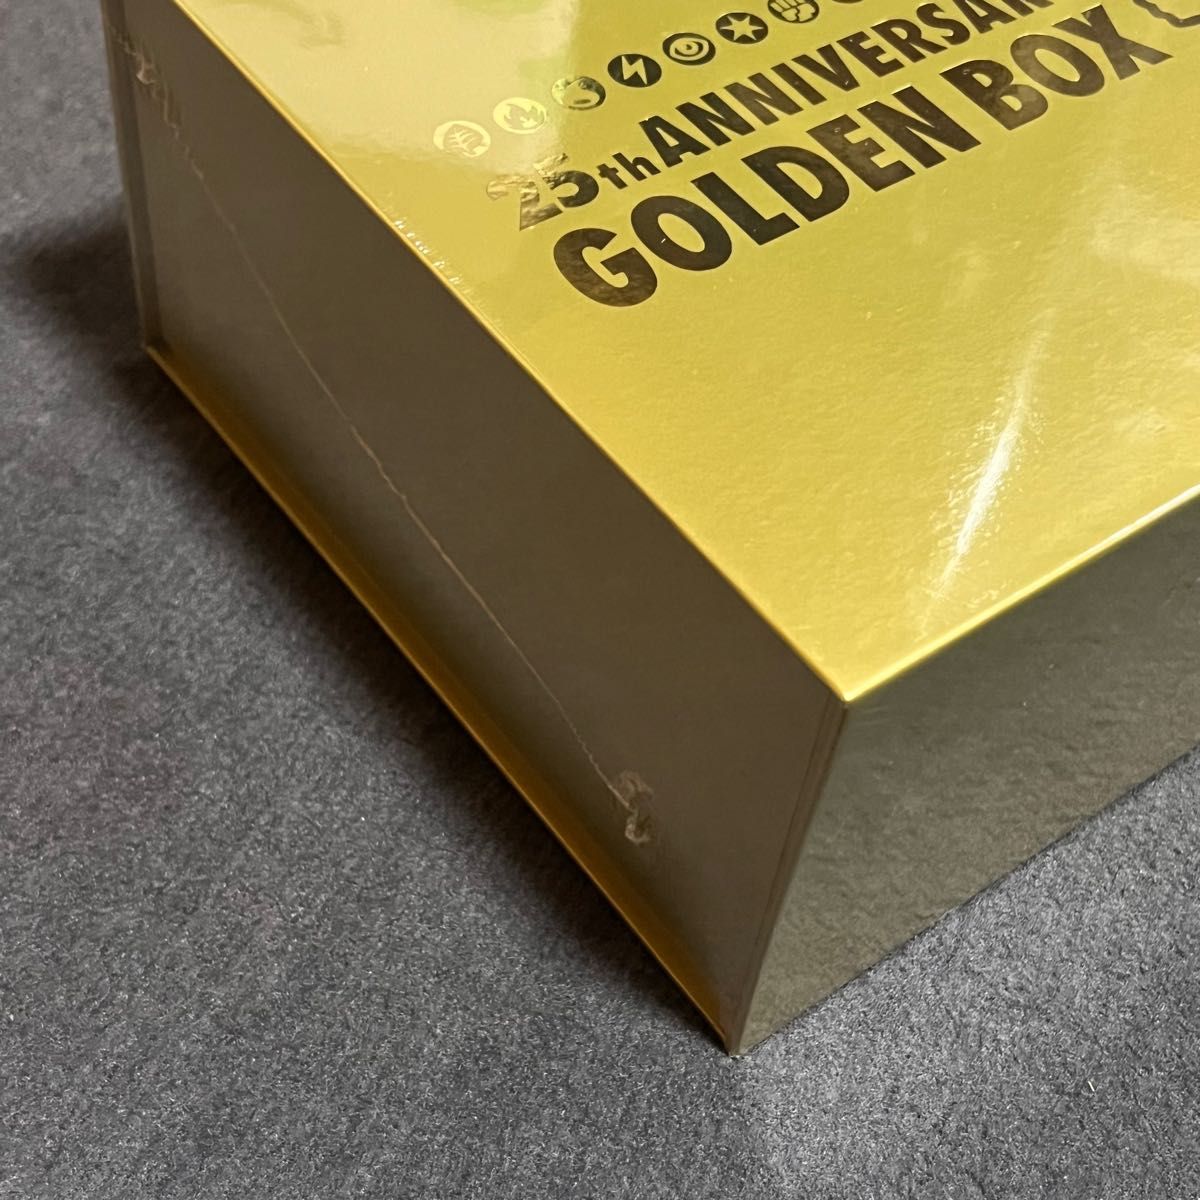 ポケカ 25th anniversary golden box Amazon産 新品未開封 シュリンク 